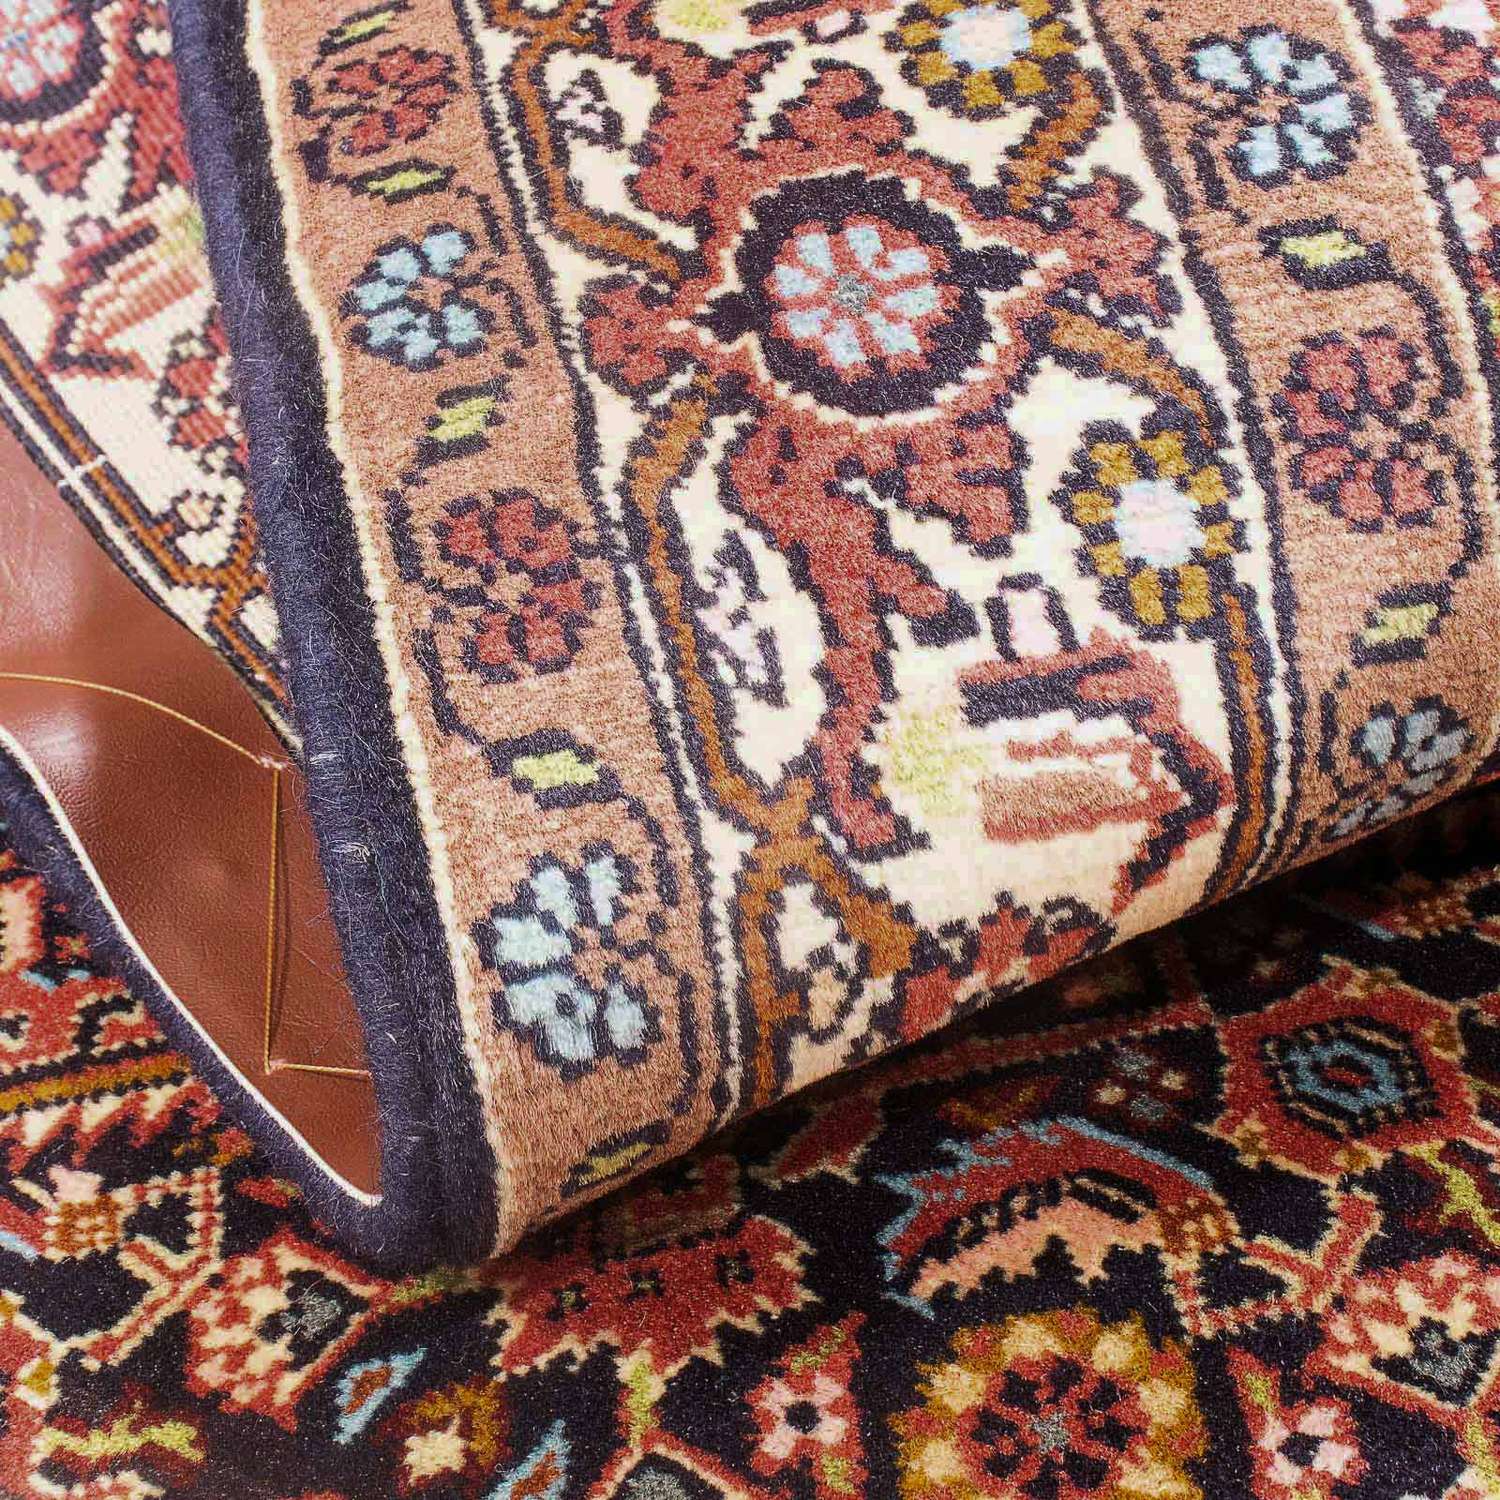 Perský koberec - Bijar - 150 x 81 cm - světle červená